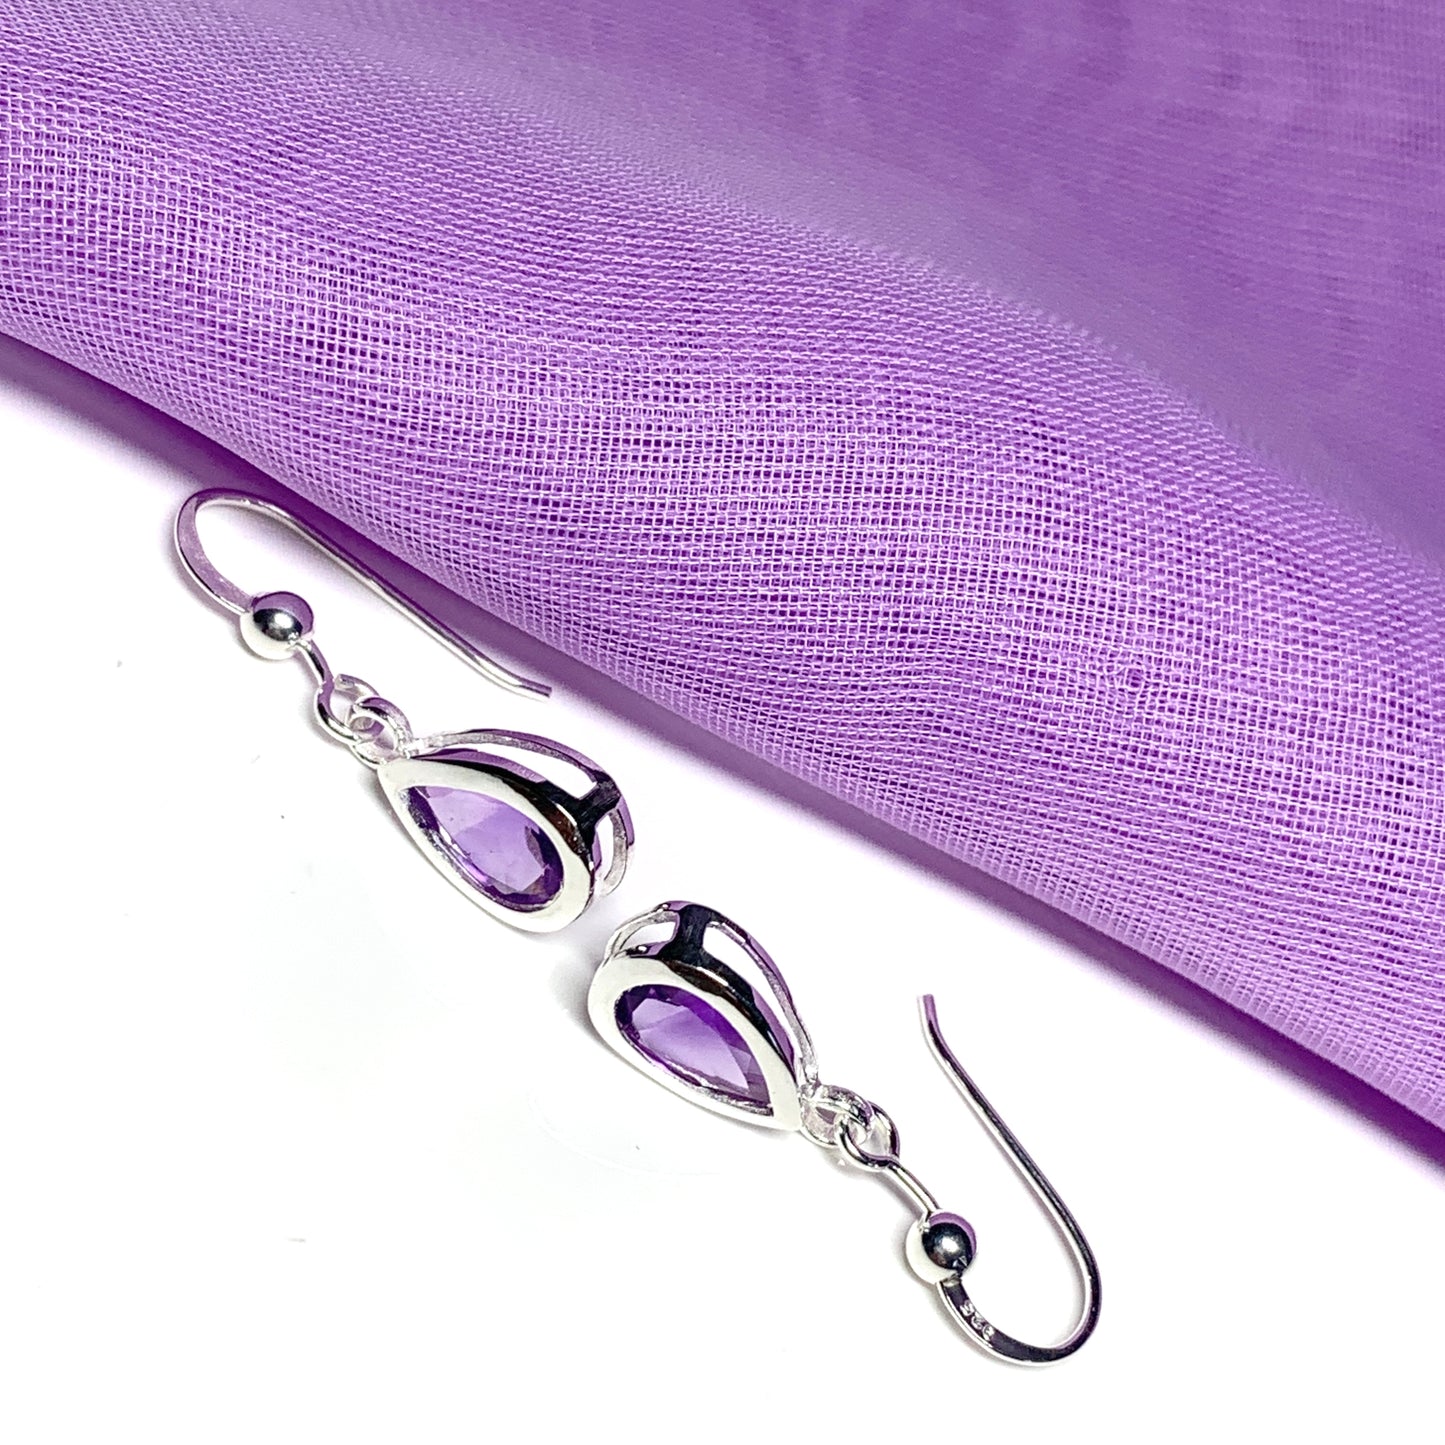 Purple pear shaped amethyst sterling silver drop earrings